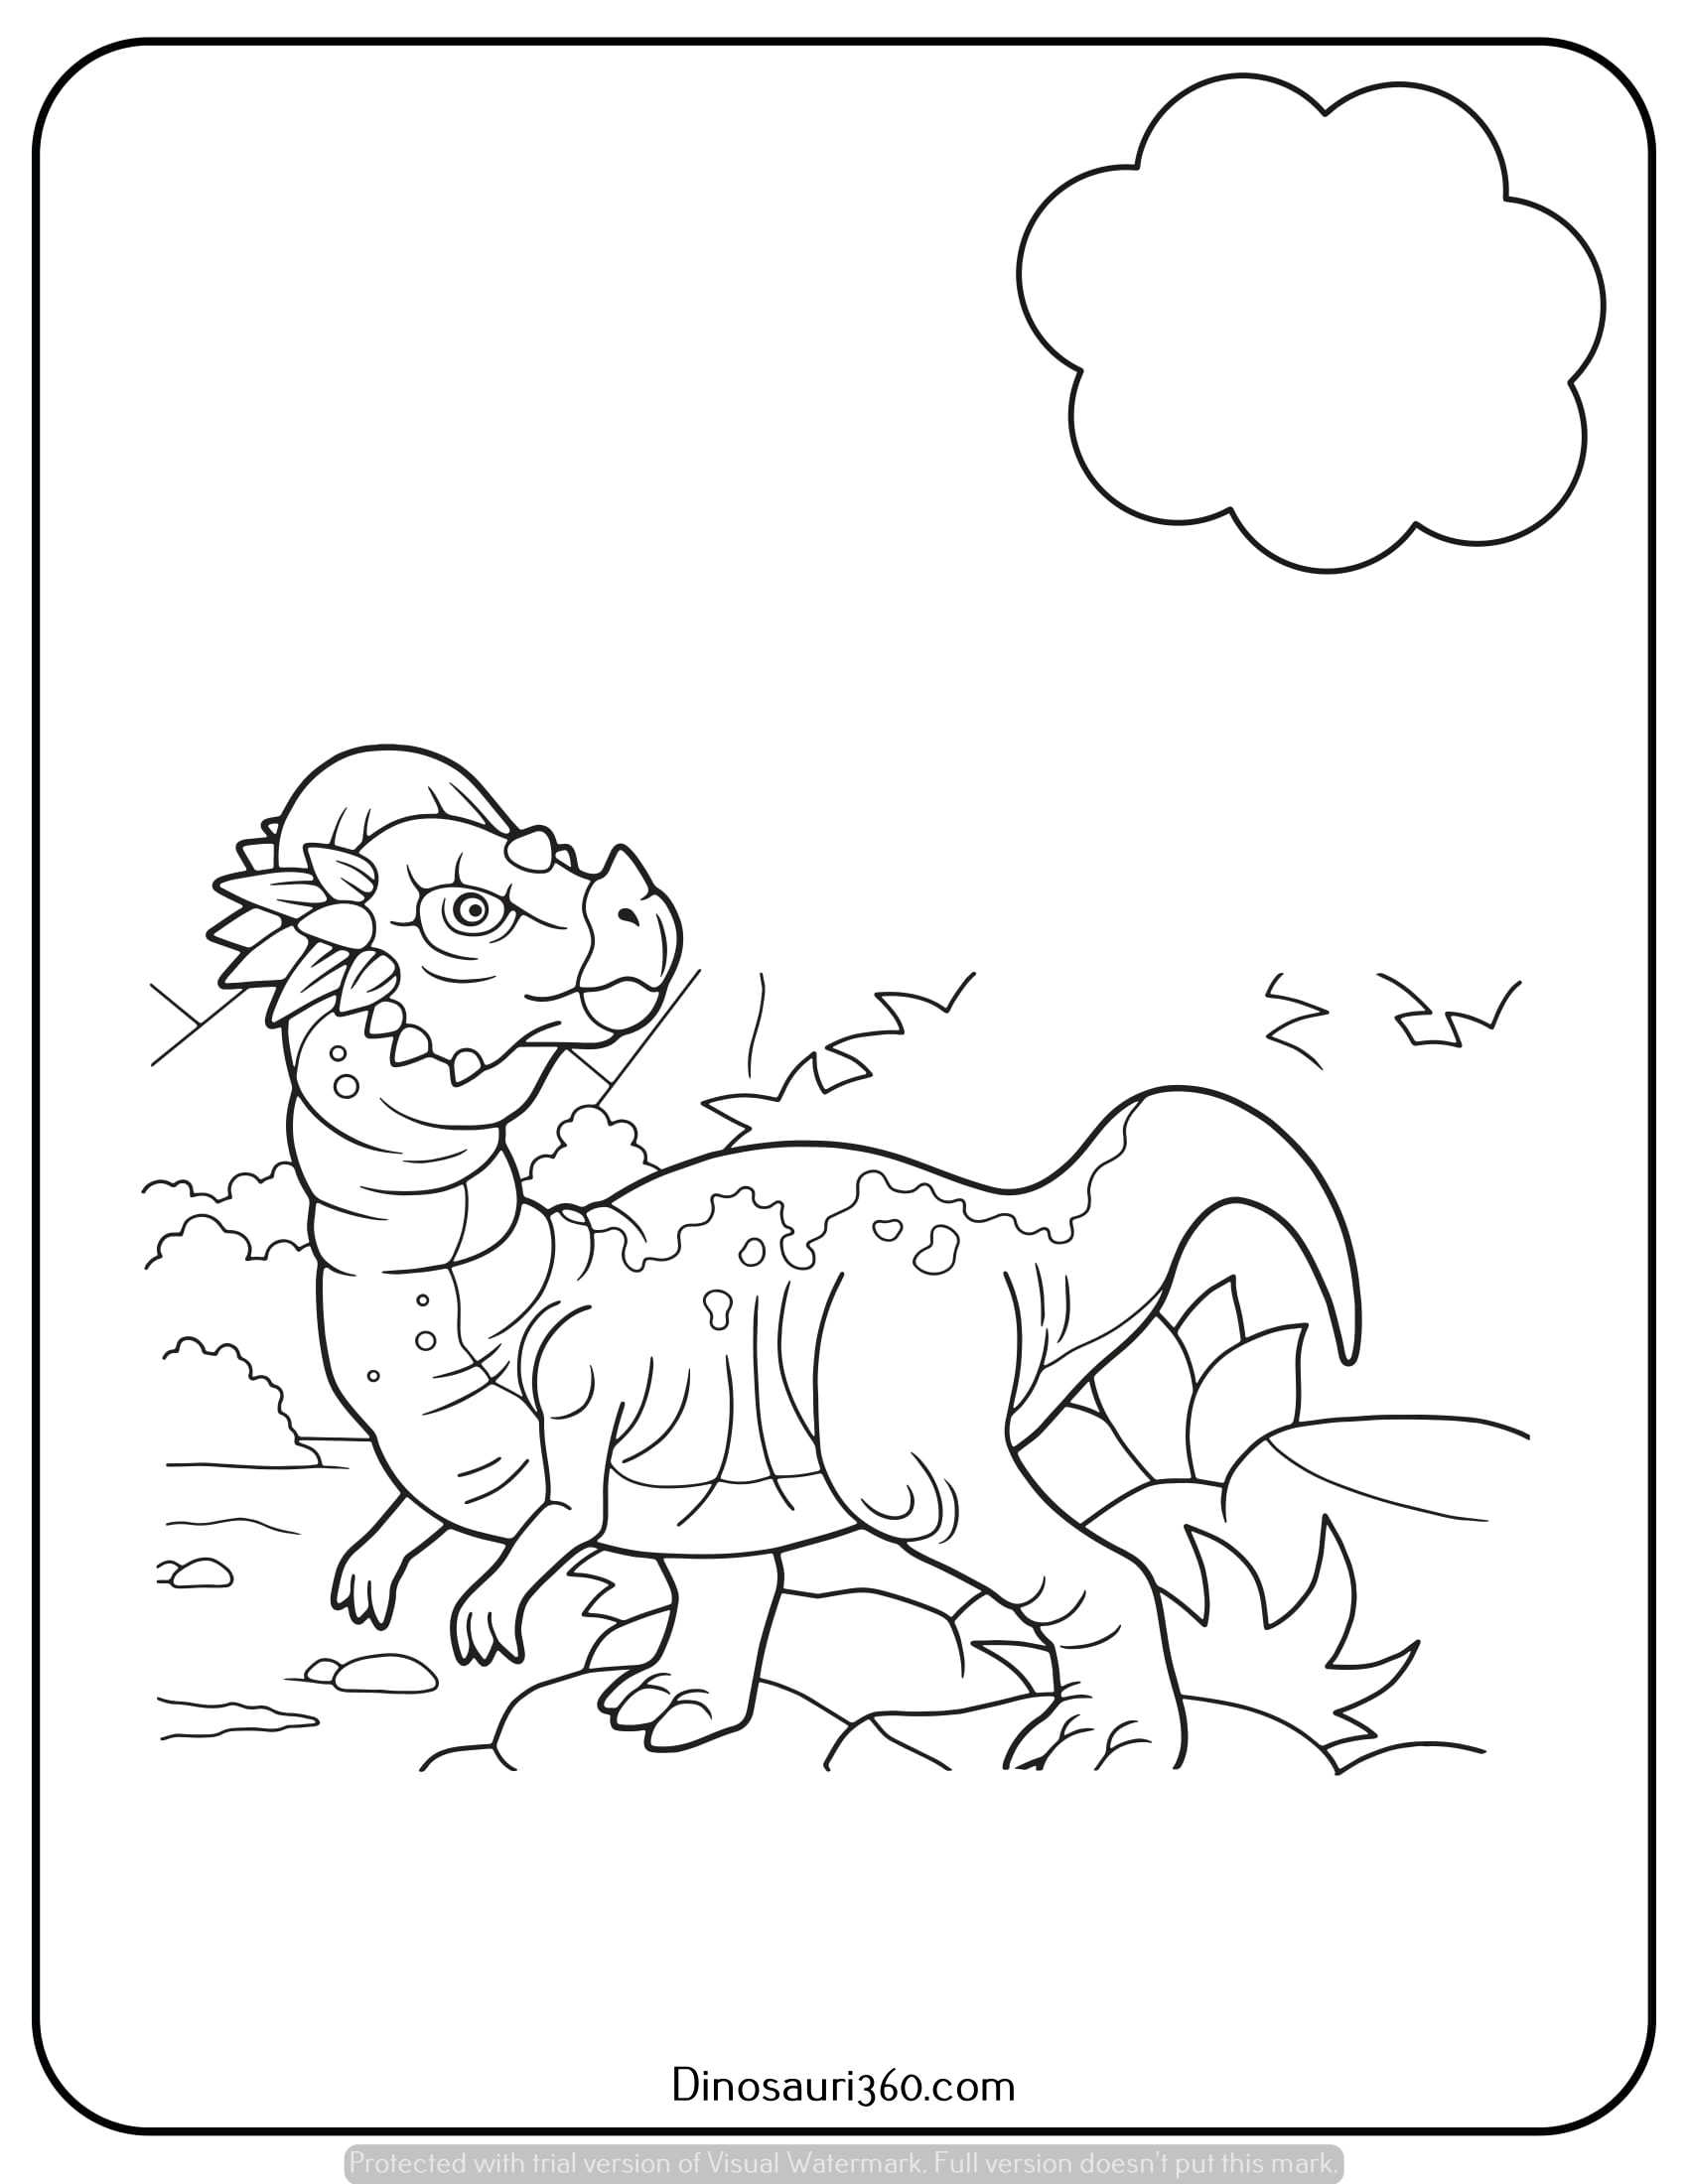 Dinosauri da colorare e stampare gratis (11)